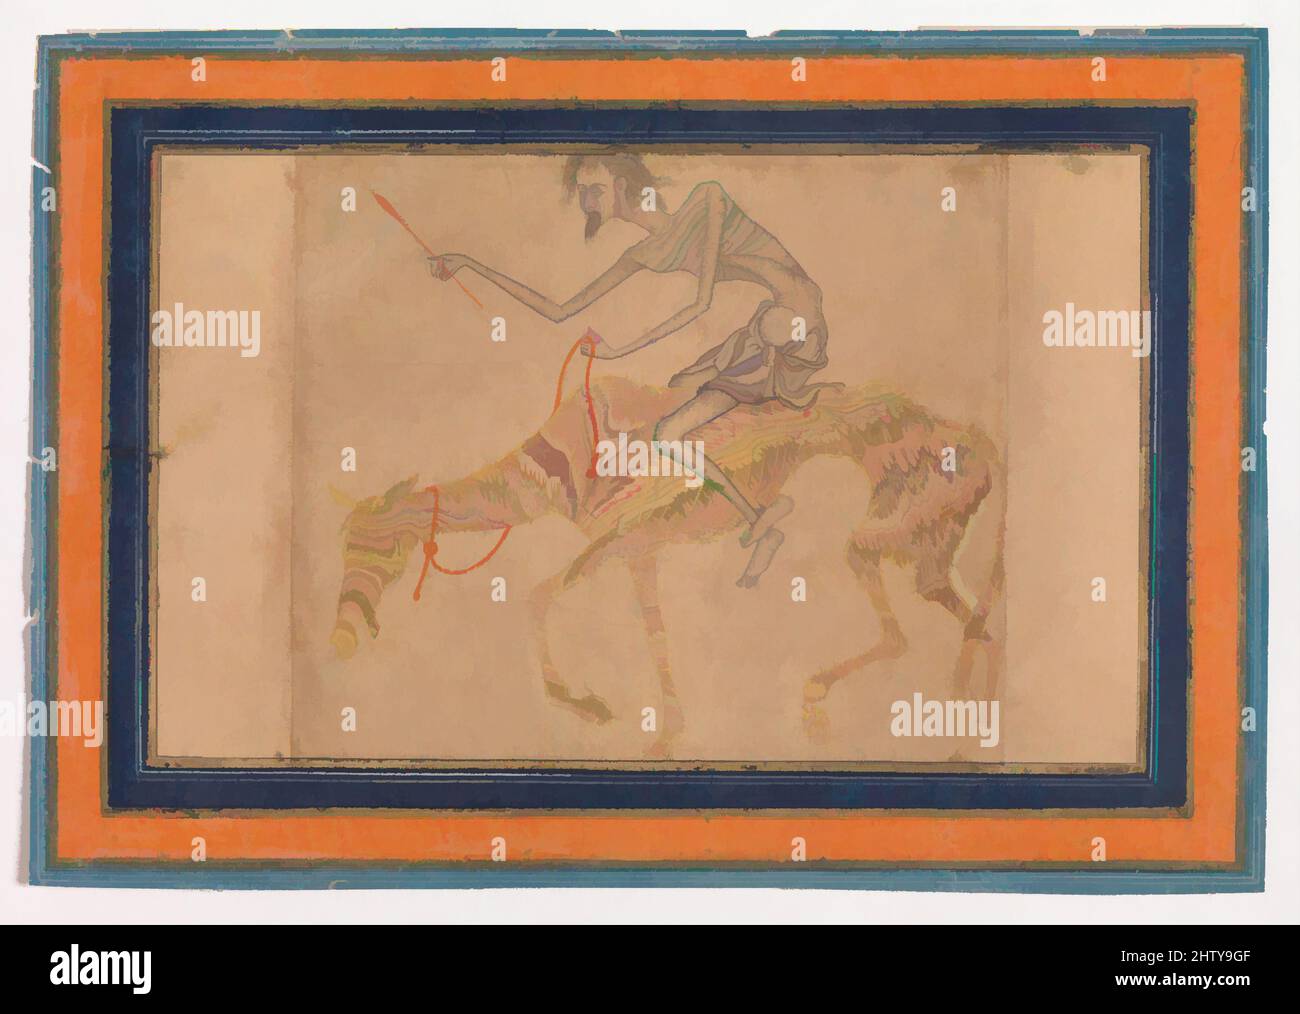 Kunst inspiriert von abgemagerten Pferd und Reiter, ca. 1625, Indien zugeschrieben, Deccan, Bijapur, Tinte, Deckendes Aquarell und Gold auf Papier; marmoriertes Papier, 4 x 6 3/8in. (10,2 x 16,2cm), Codices, Mystical Interpretationen über die Sehnsüchte der Seele wurden so auffallenden, klassischen Werken zugeschrieben, die von Artotop mit einem Schuss Moderne modernisiert wurden. Formen, Farbe und Wert, auffällige visuelle Wirkung auf Kunst. Emotionen durch Freiheit von Kunstwerken auf zeitgemäße Weise. Eine zeitlose Botschaft, die eine wild kreative neue Richtung verfolgt. Künstler, die sich dem digitalen Medium zuwenden und die Artotop NFT erschaffen Stockfoto